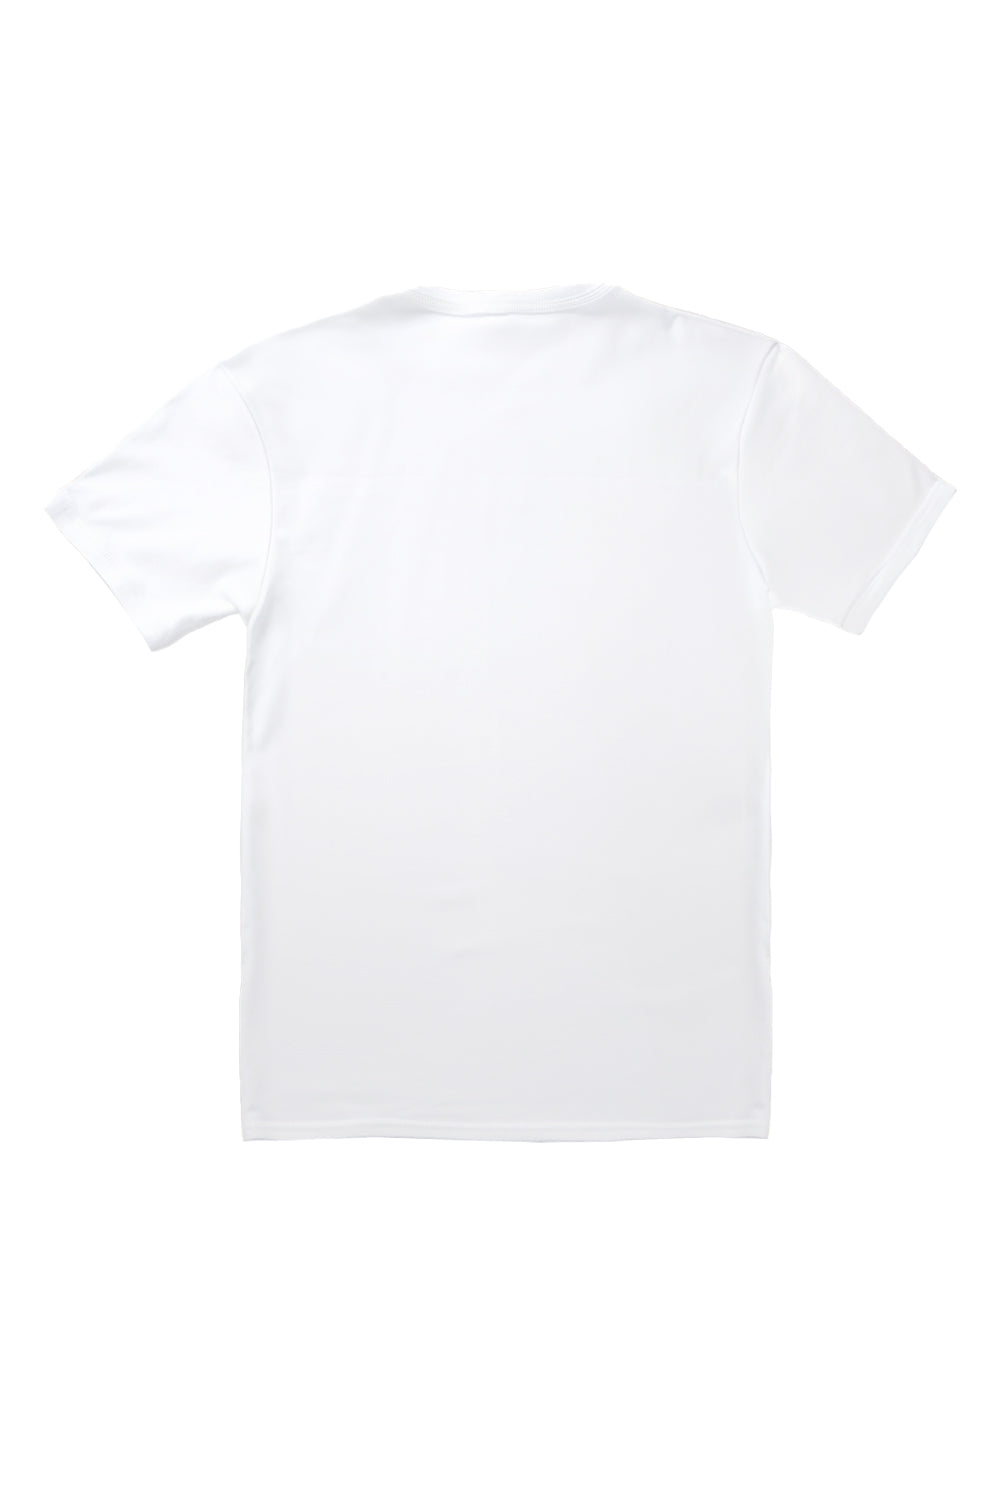 Better Days Ahead Bow's T-Shirt in White (Custom Packs)